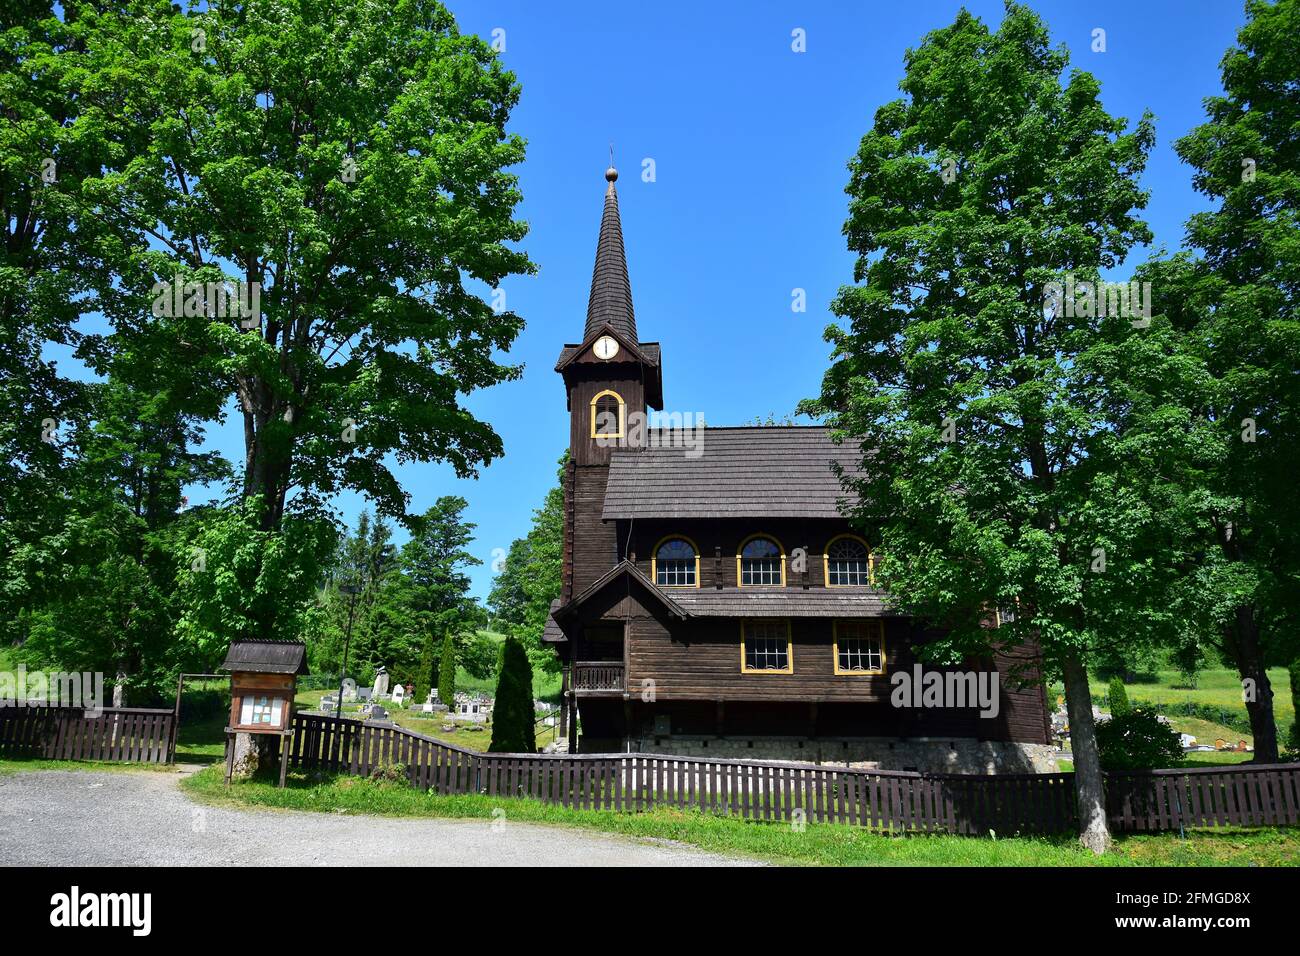 La chiesa in legno di Tatranska Javorina, un piccolo paese nel Tatry Belianske, con un cimitero e alberi. Slovacchia. Immagine presa da terra pubblica. Foto Stock